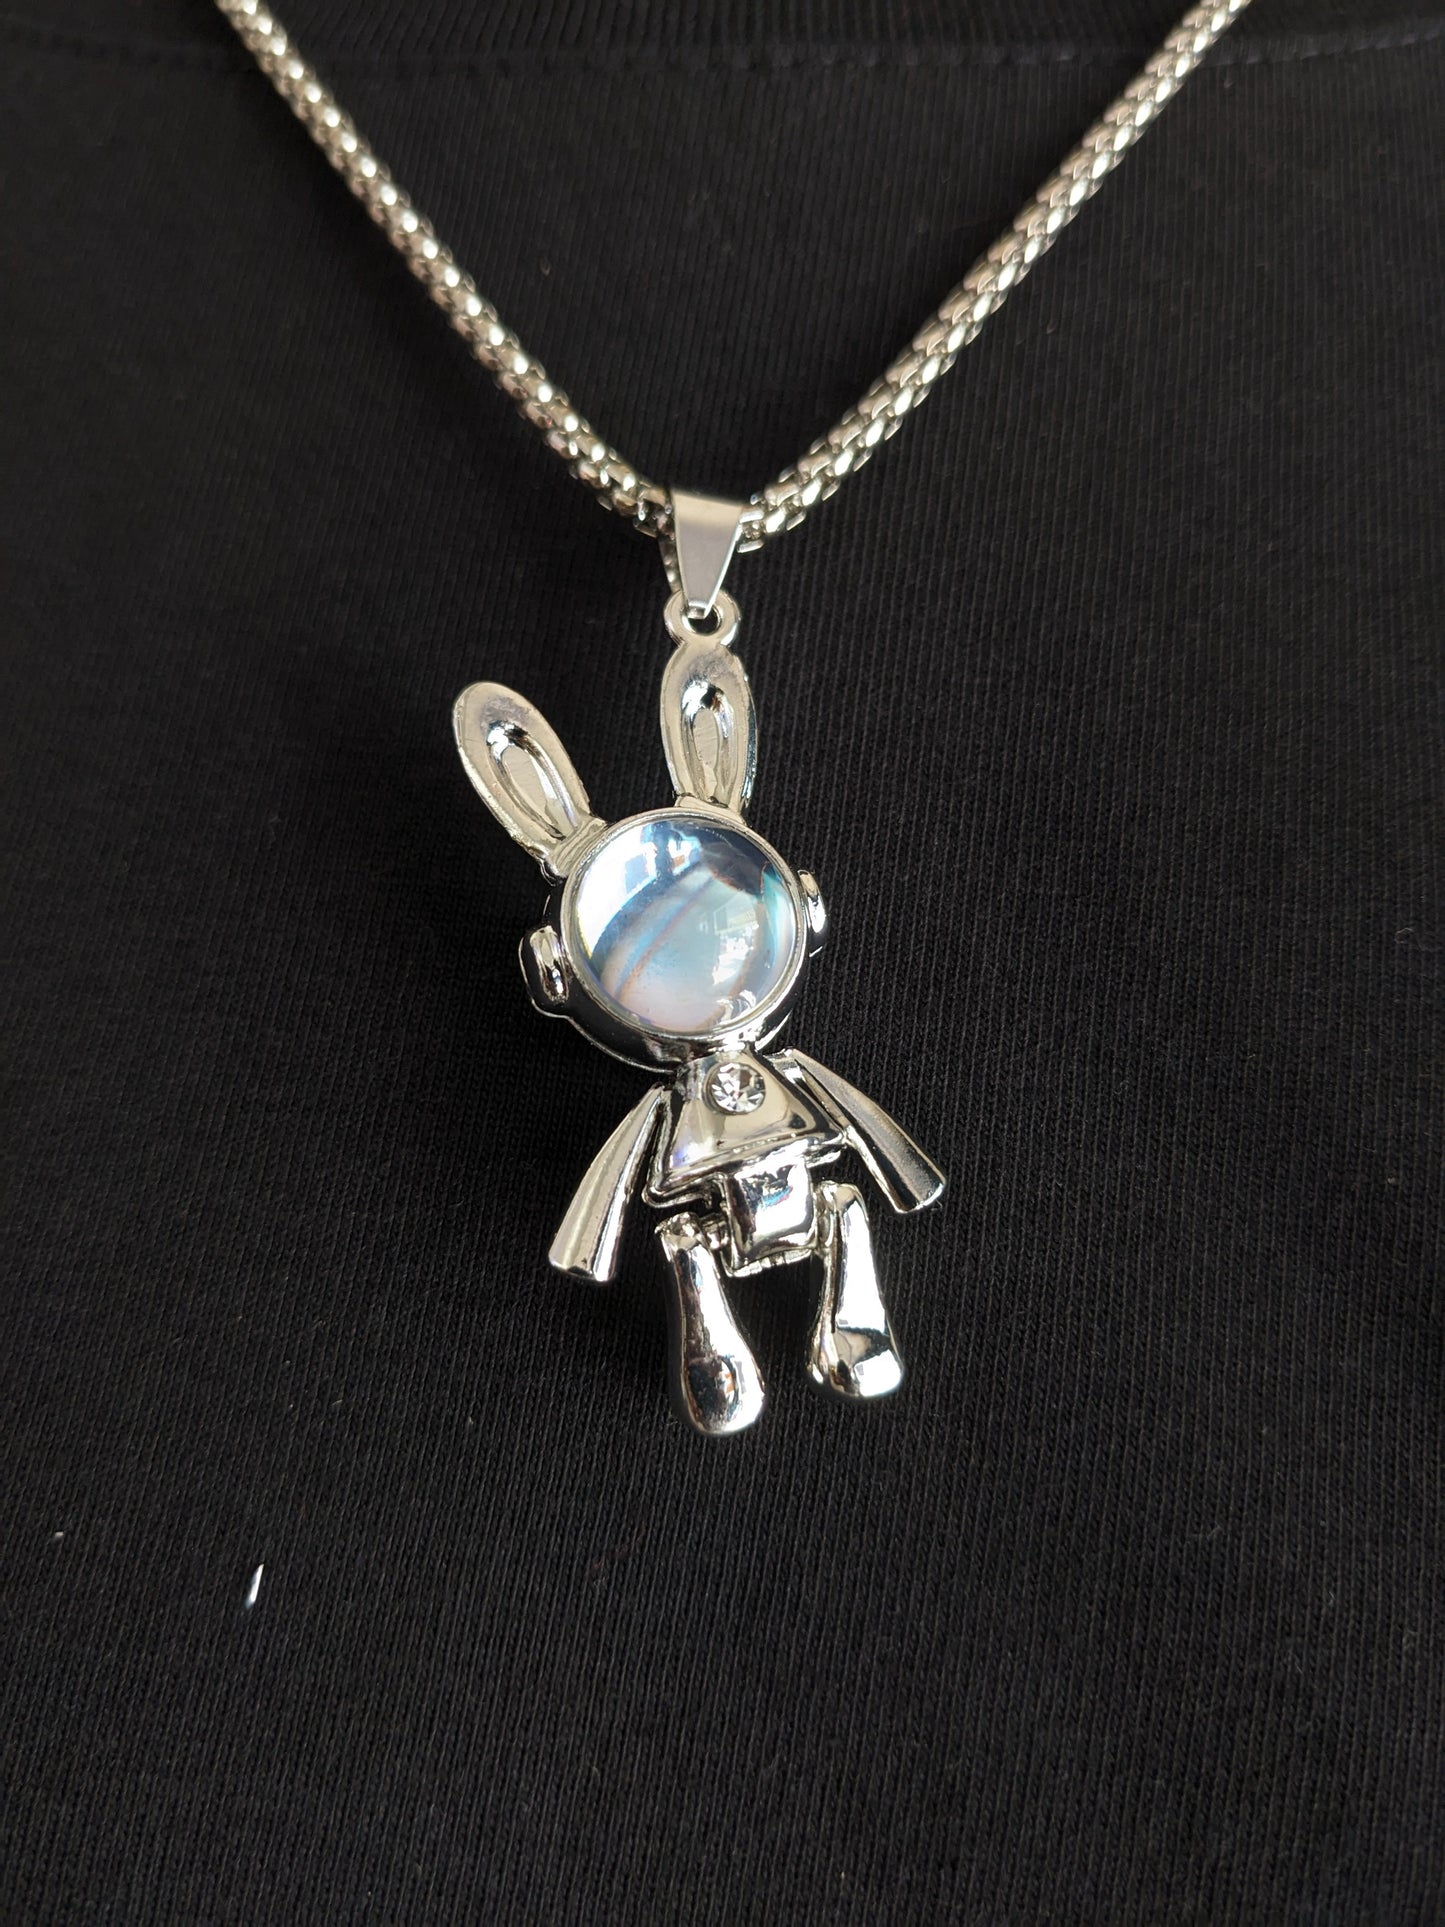 Space Astro Bunny Necklace